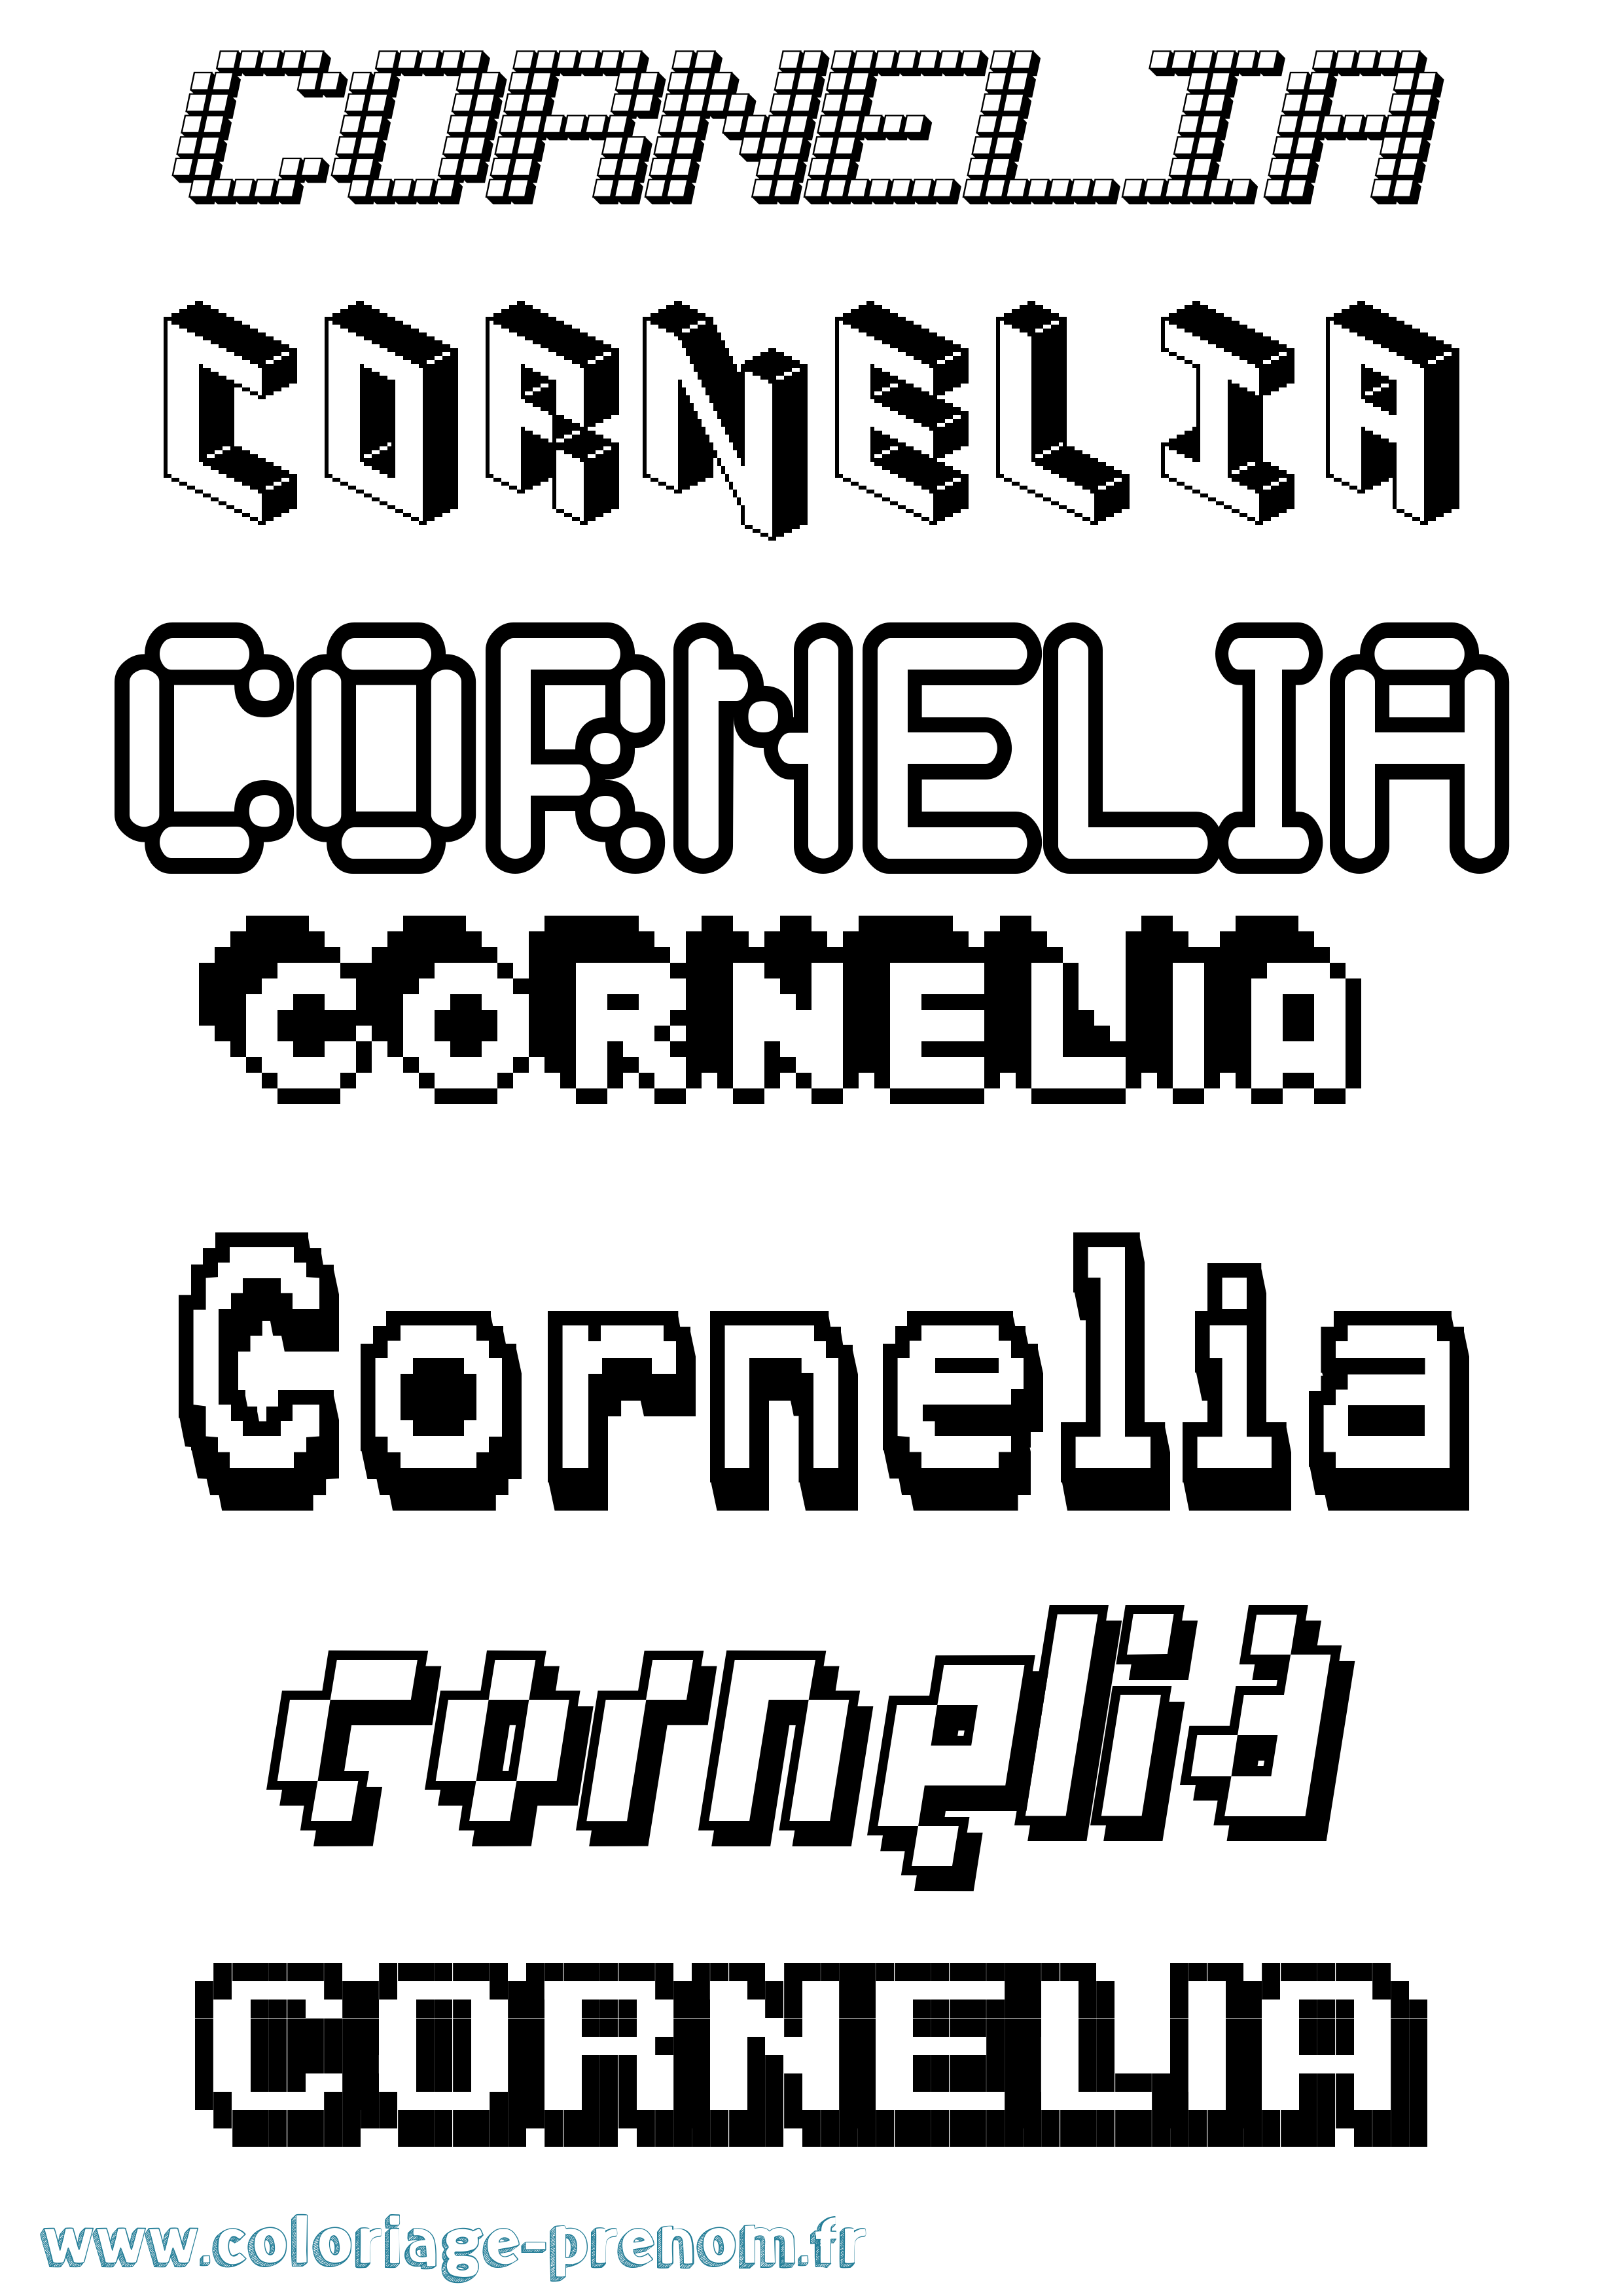 Coloriage prénom Cornelia Pixel